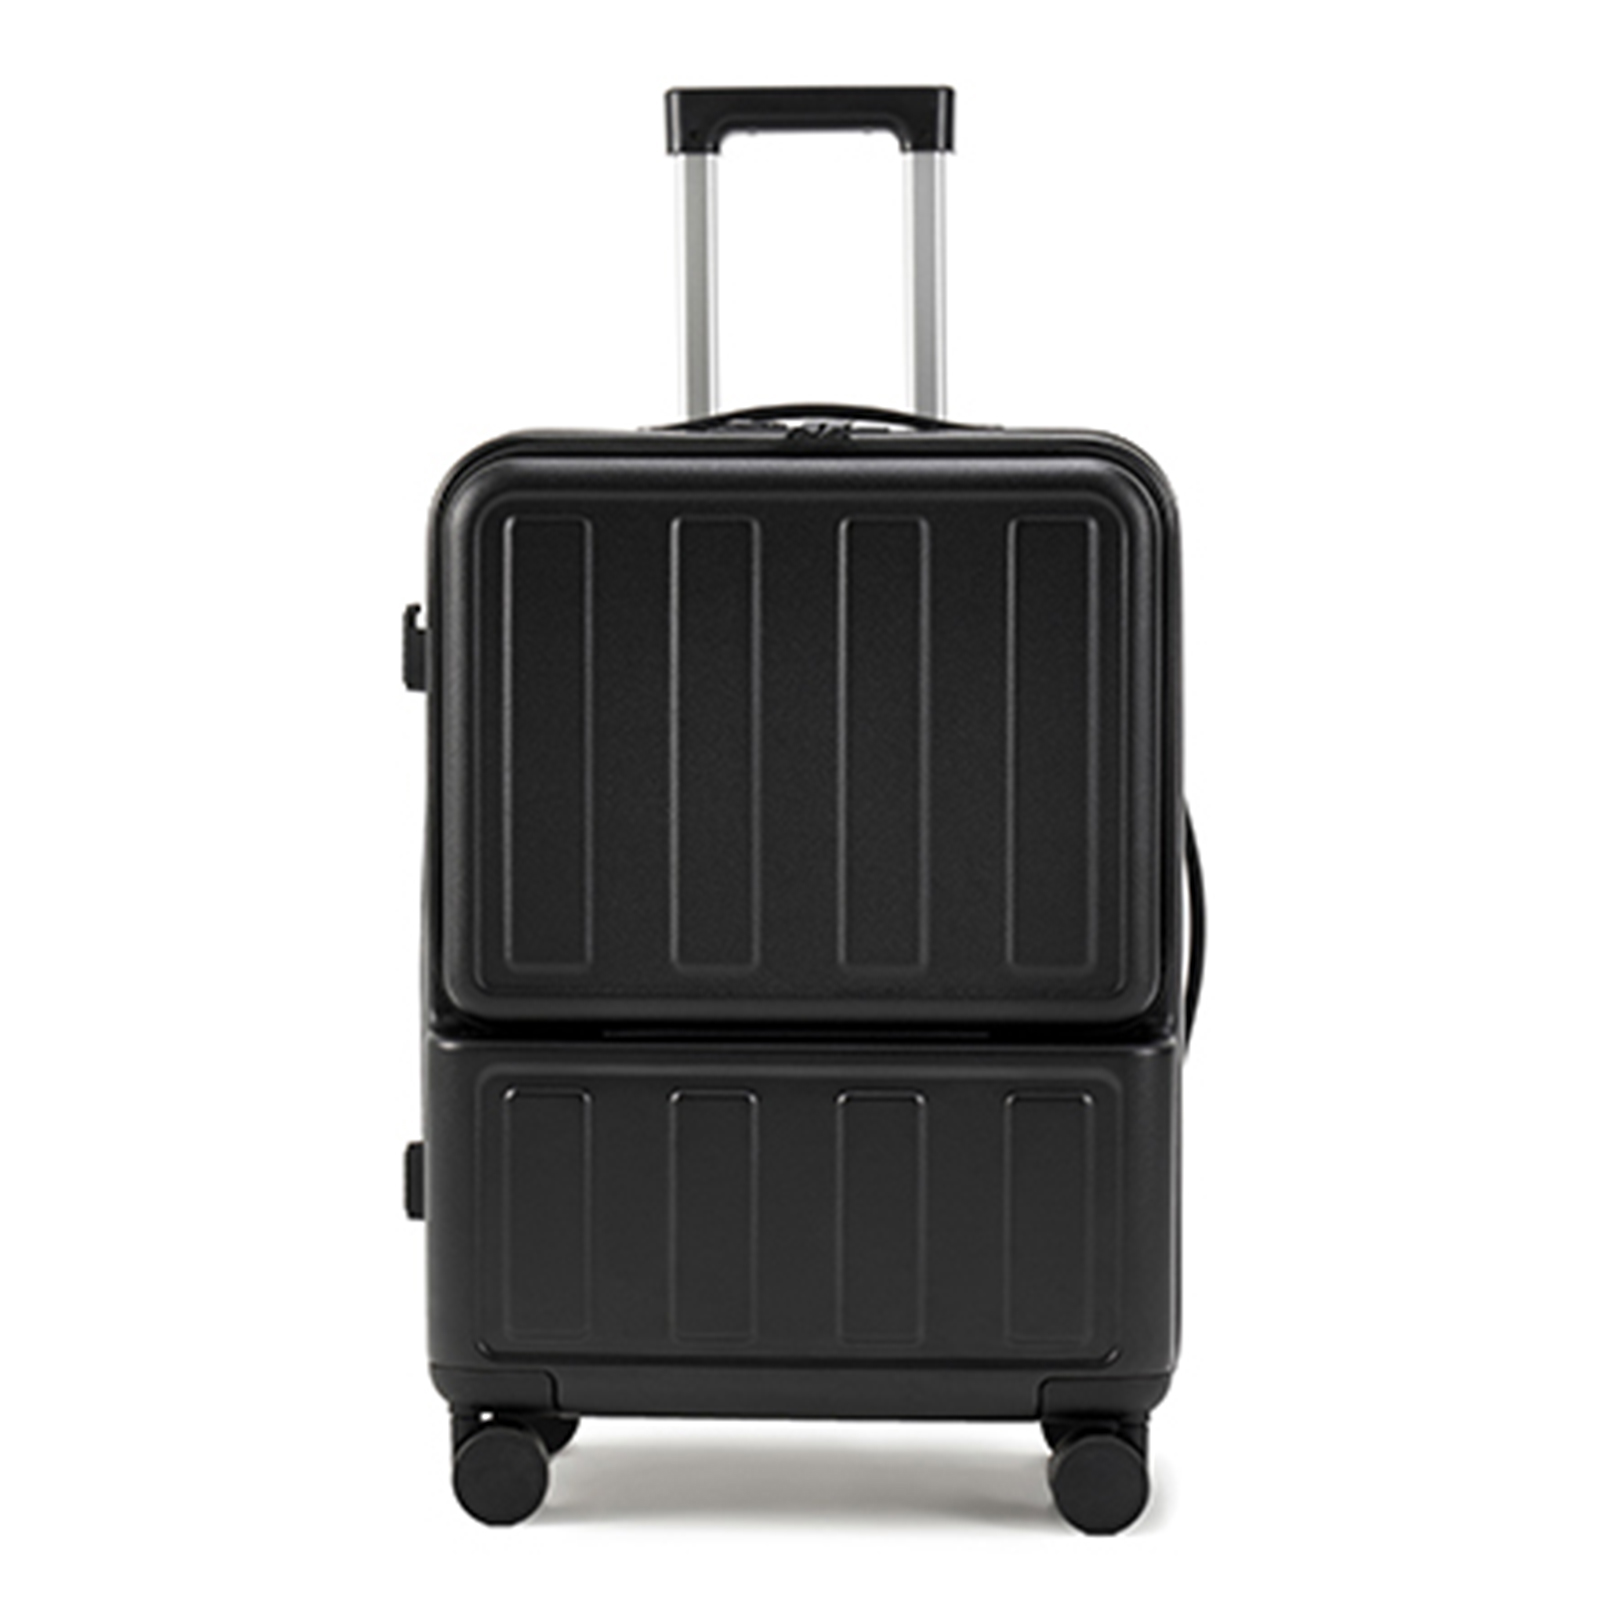 スーツケース 機内持ち込み Sサイズ キャリーケース キャリーバッグ TSAロック USBポート付き 前開き フロントオープン 2泊3日 軽量 静音  360度回転 sc179-20